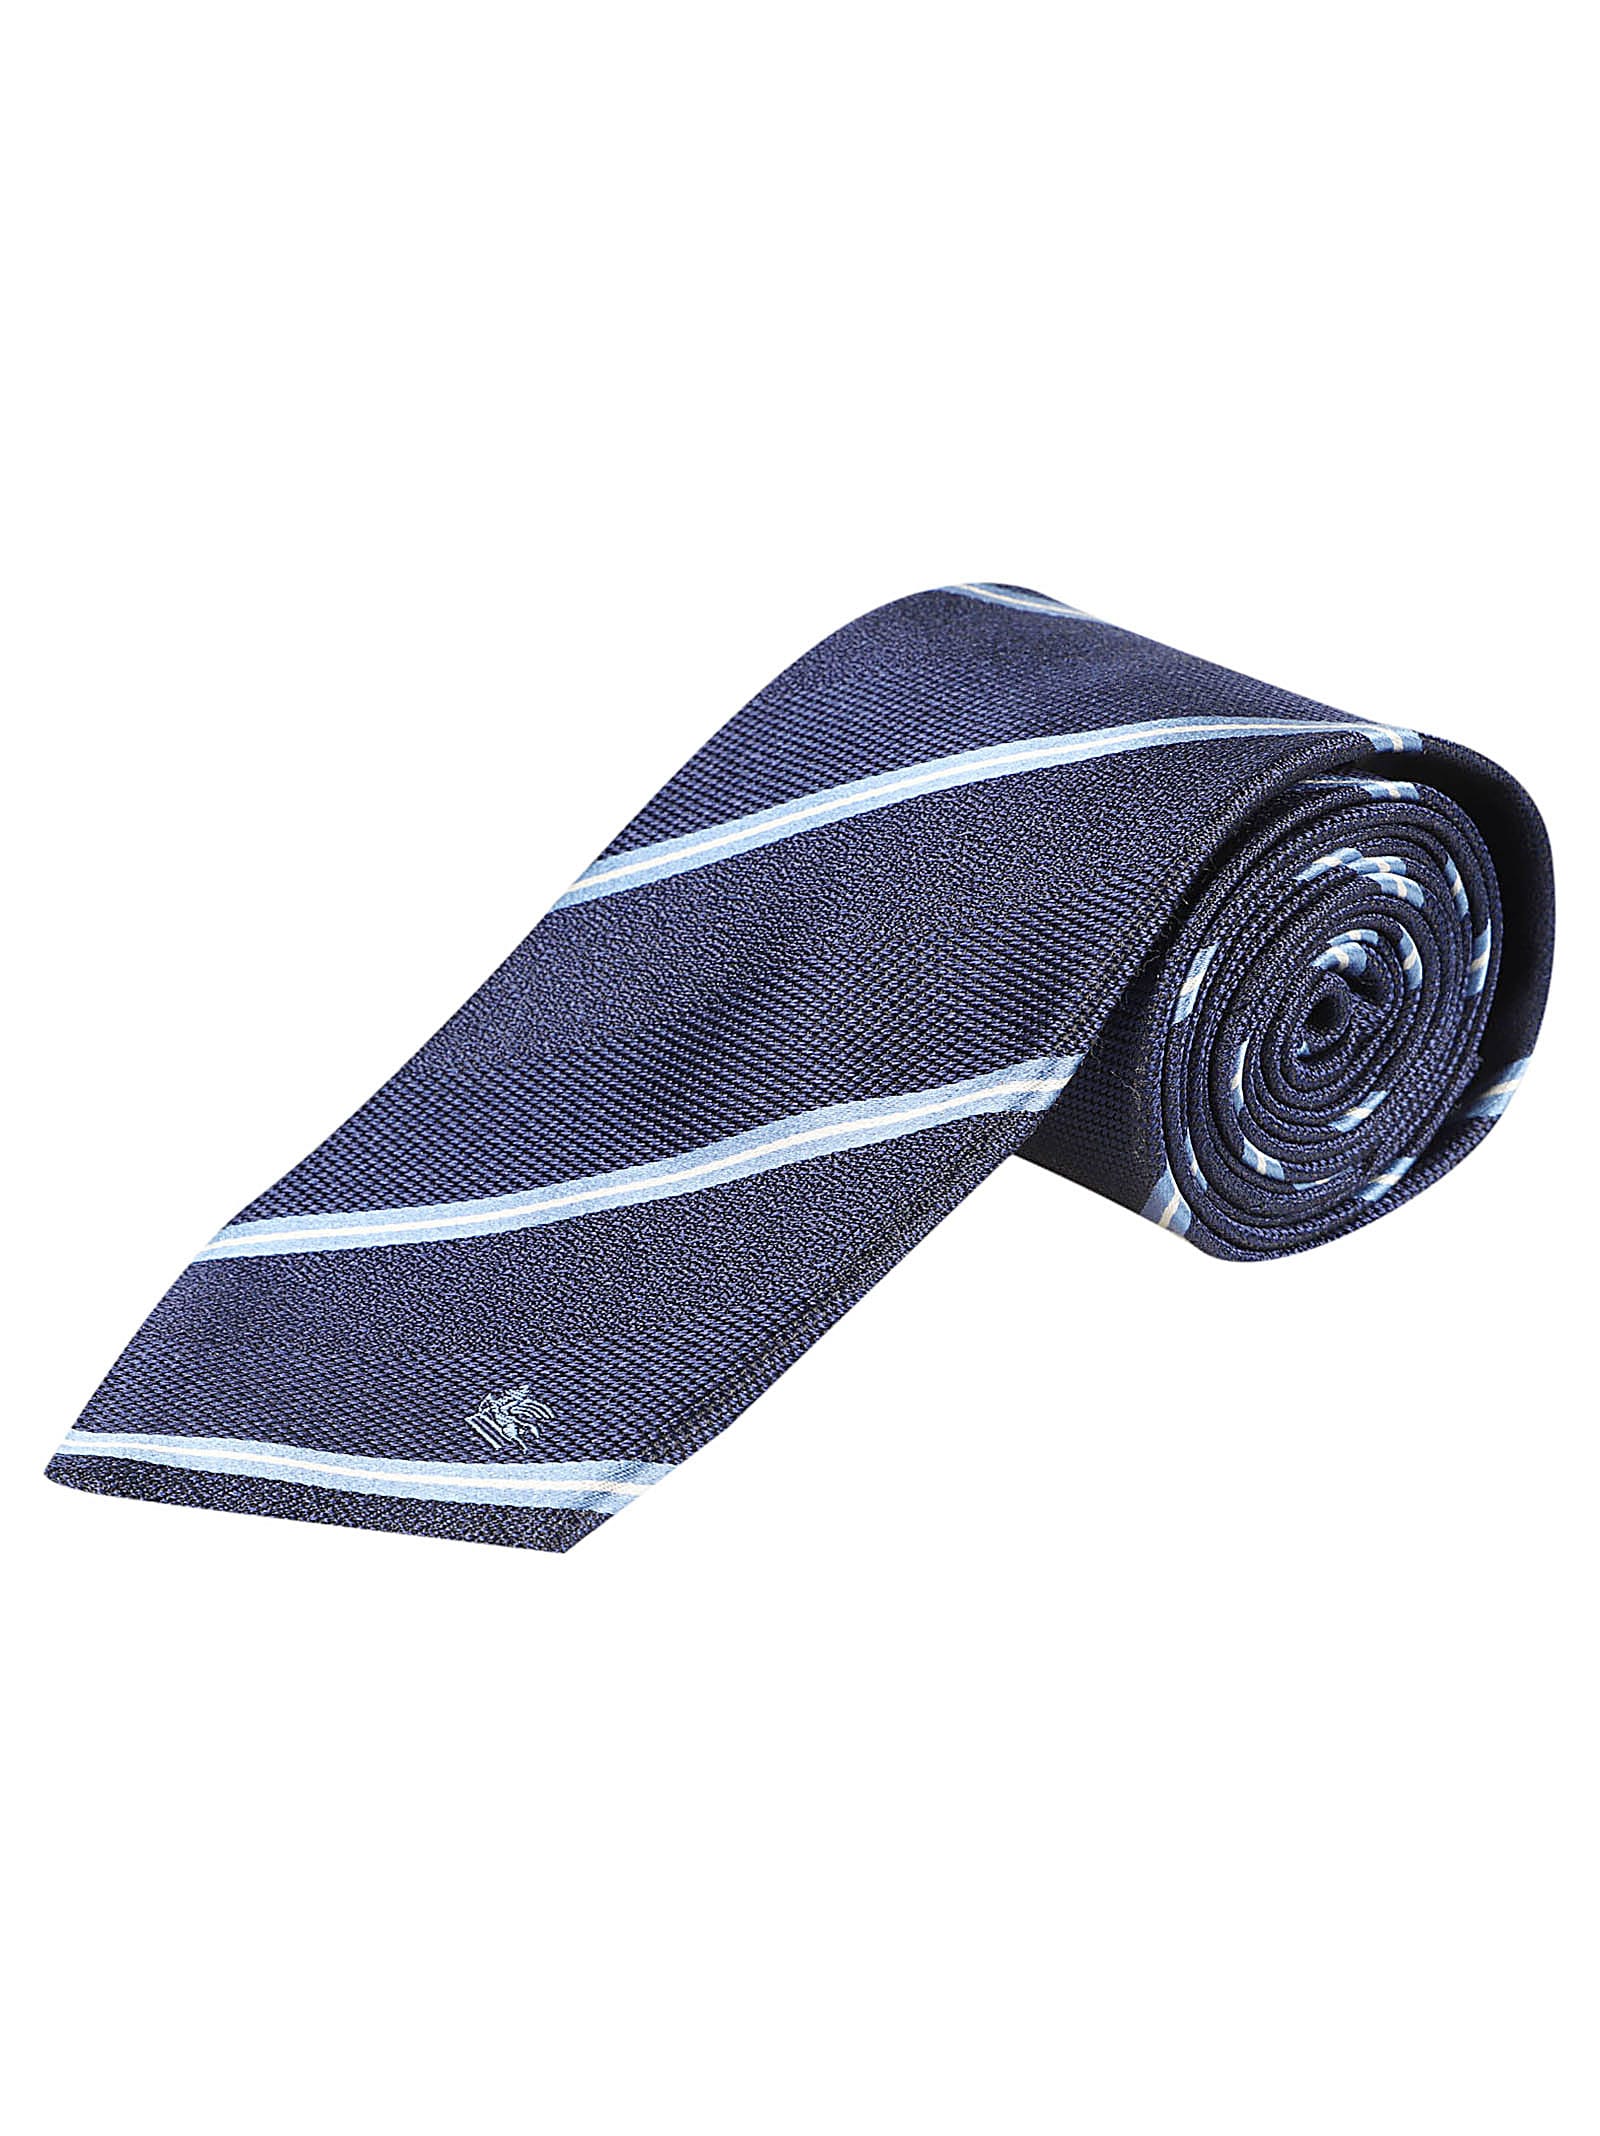 Shop Etro Tie In Blu Navy